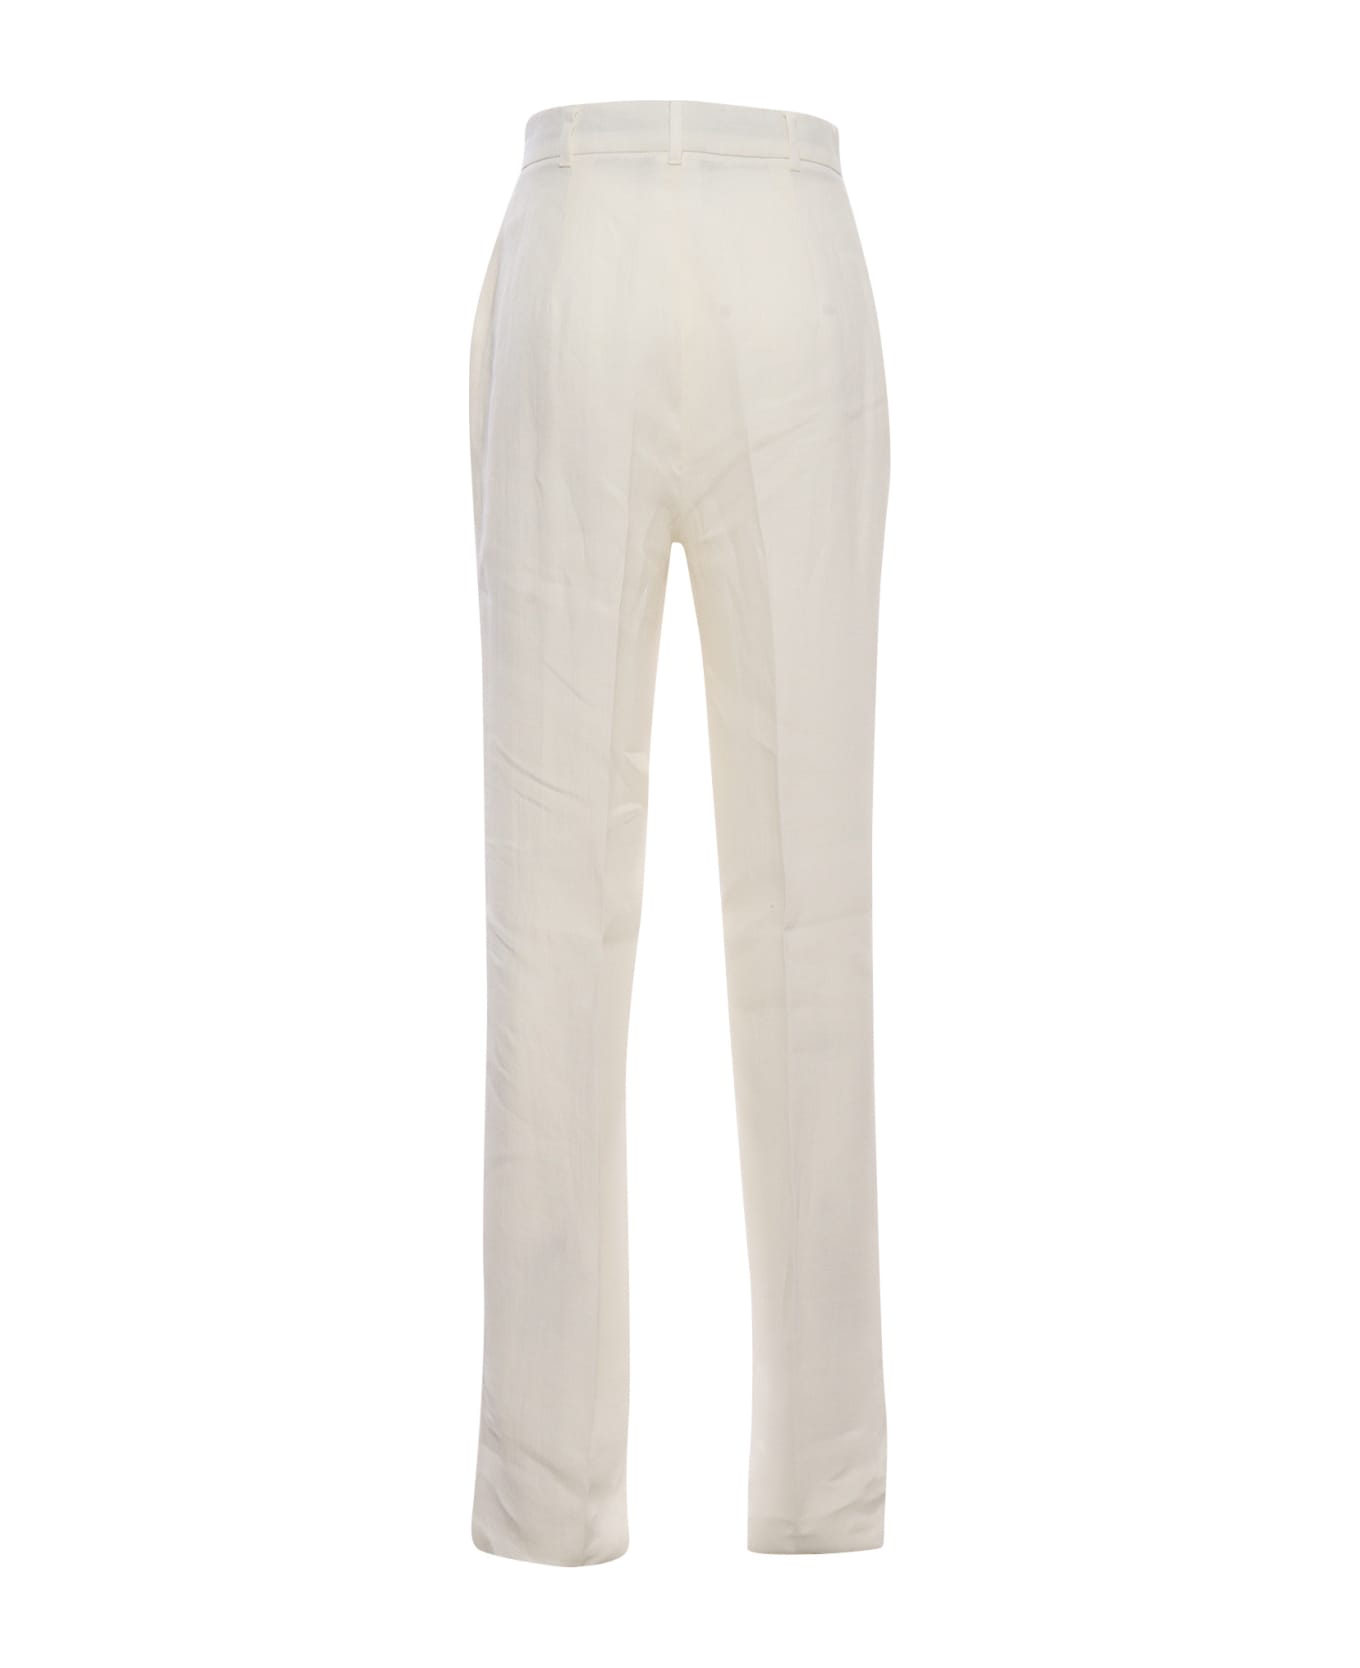 Max Mara Studio Alcano White Trousers - WHITE